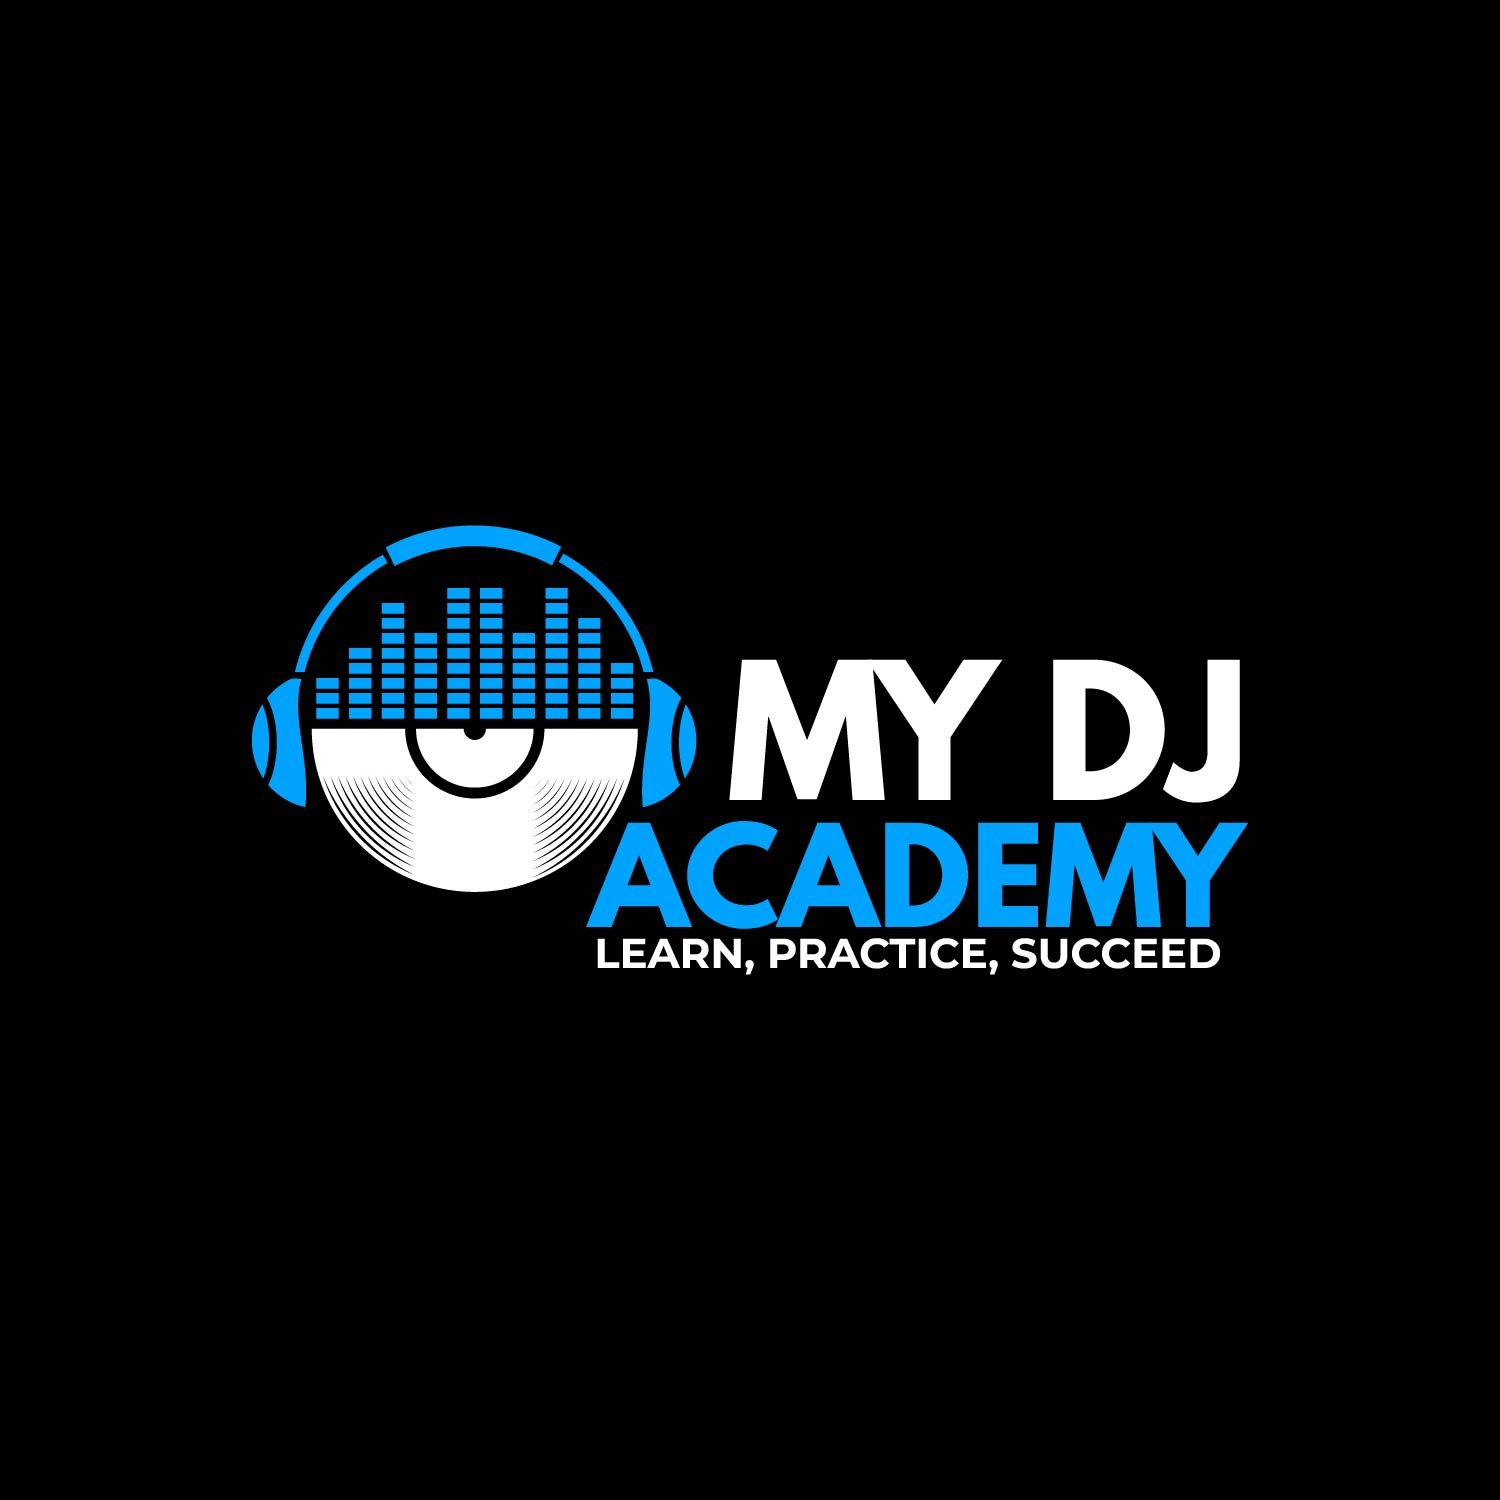 My Dj Academy logo